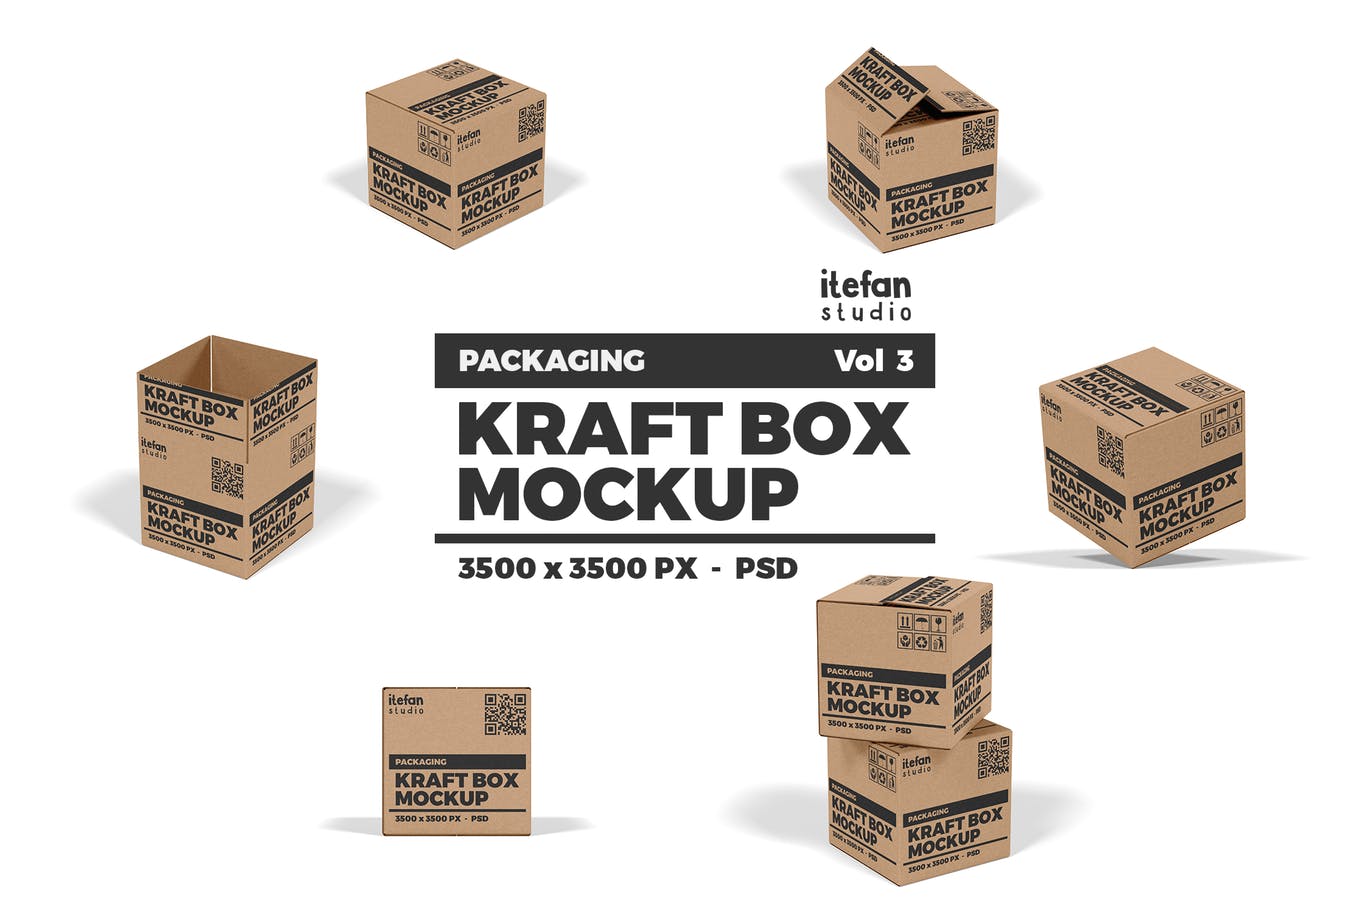 牛皮纸包装盒非凡图库精选模板v3 Kraft Box Mockup – Packaging Vol 3插图